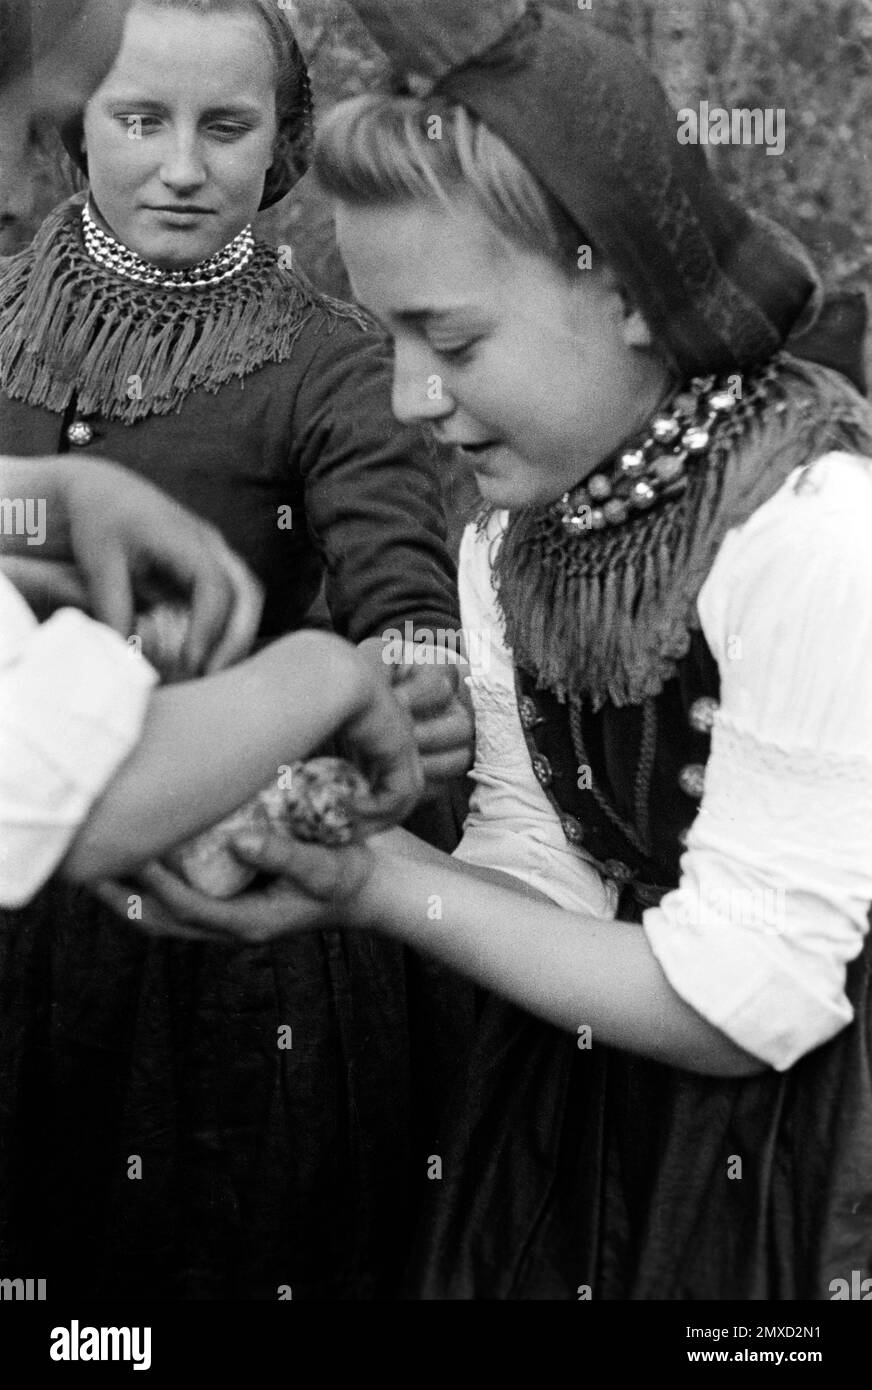 Junge Frau in Tracht mit gefundenen Ostereiern, Schwalm-Eder-Kreis in Hessen, 1938. Jeune femme en costume traditionnel avec oeufs de Pâques trouvés, région de Schwalm-Eder à Hesse, 1938. Banque D'Images